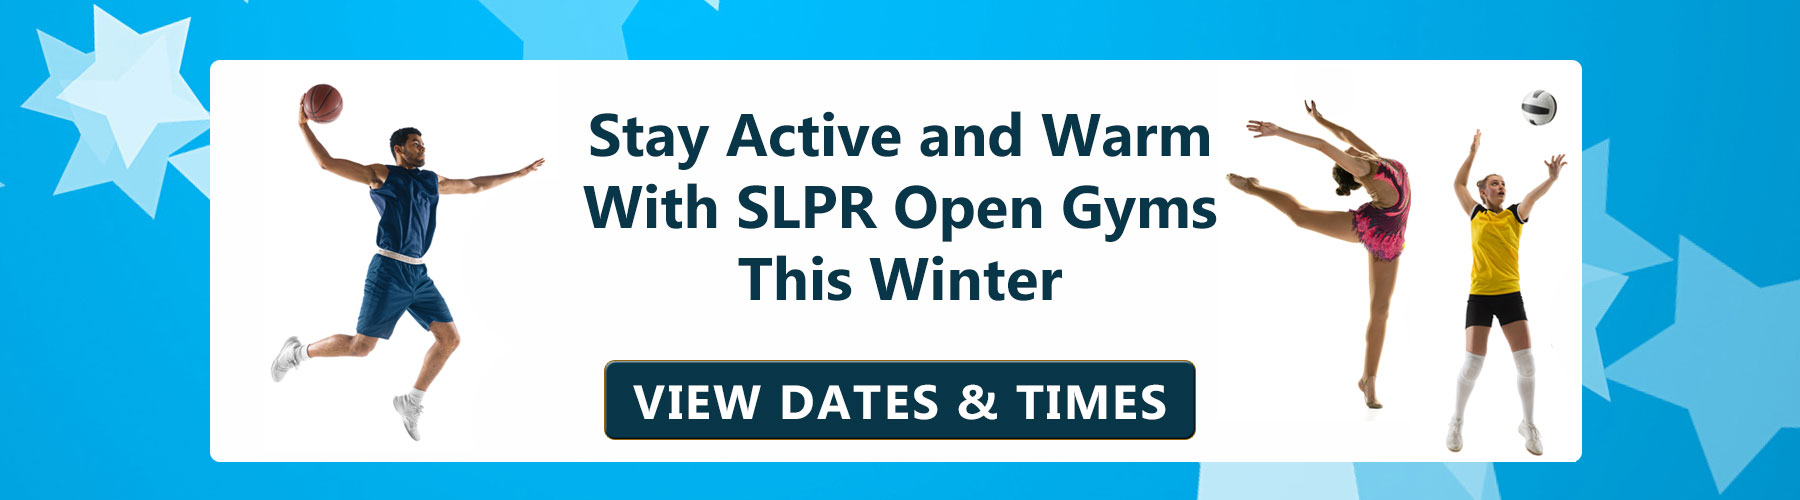 SLPR Open Gyms